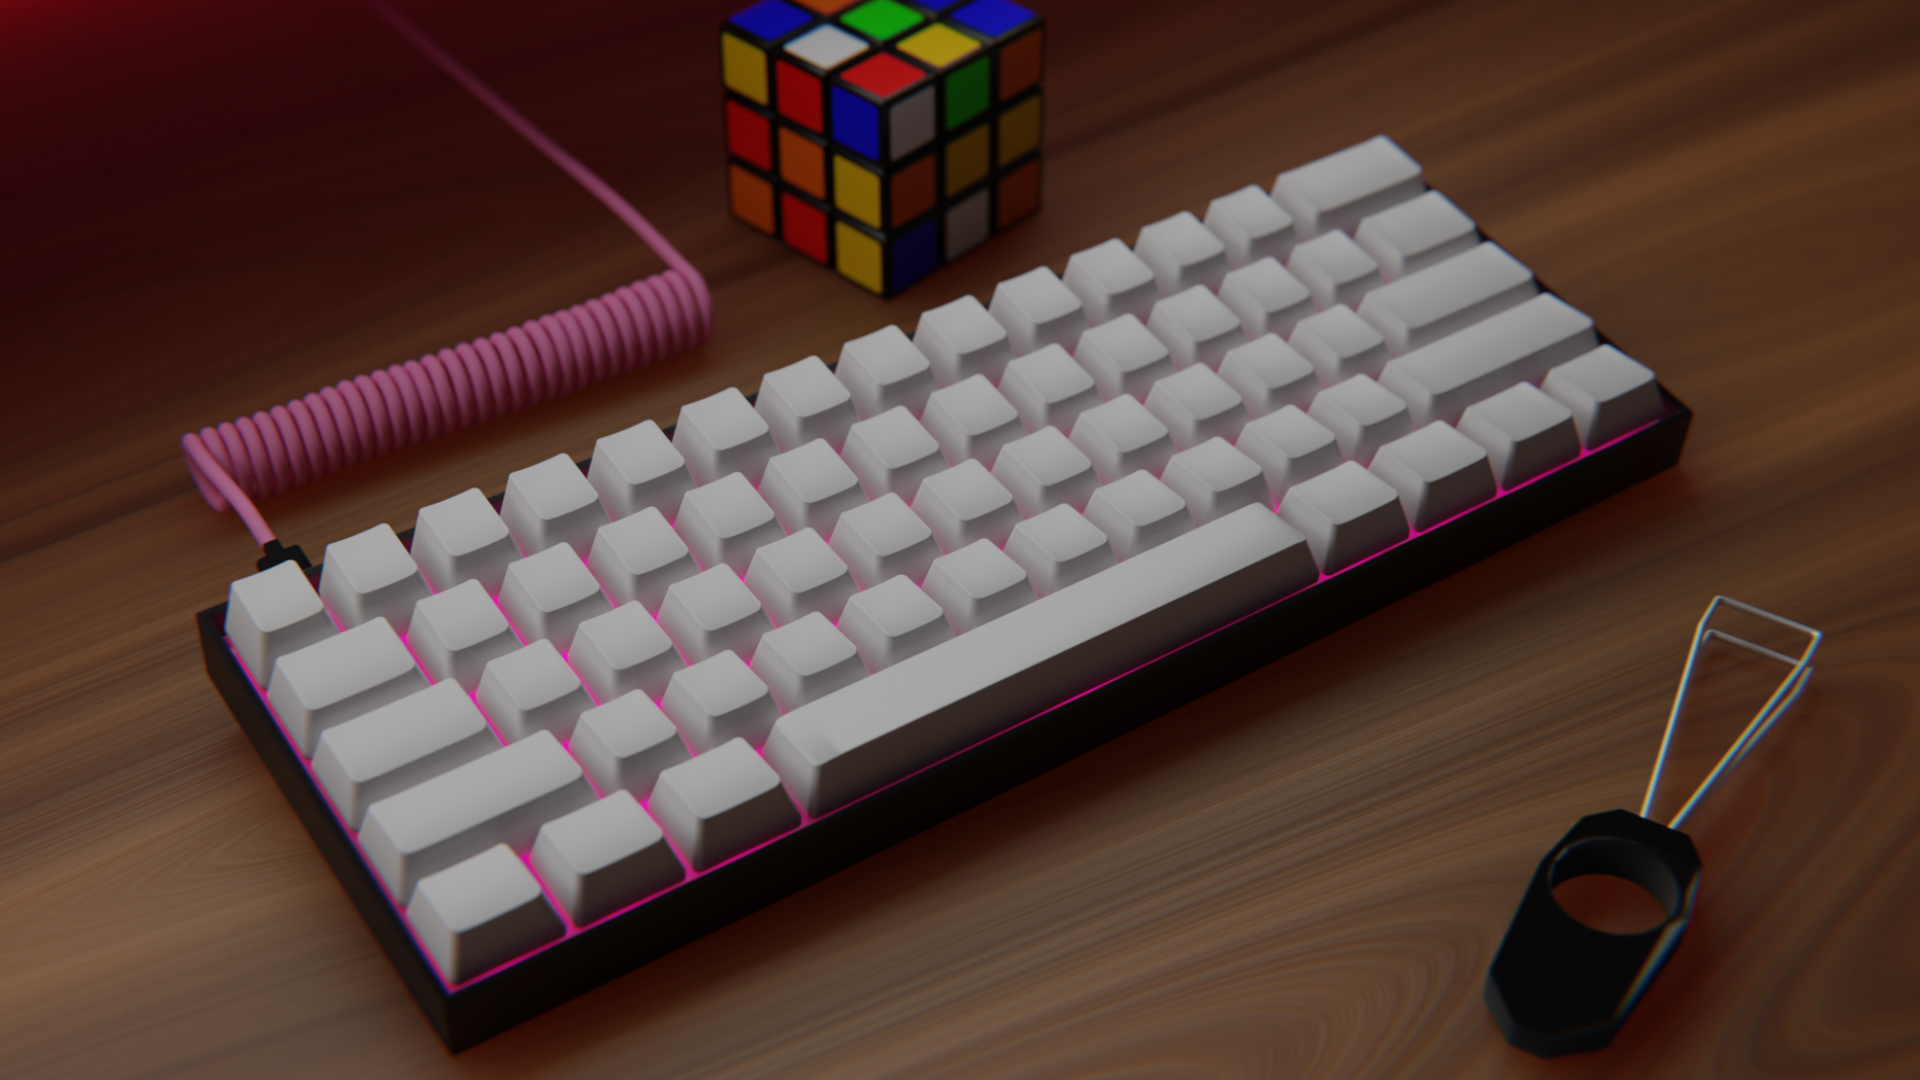 Tastiera 60% con keycaps bianchi, scocca nera e led rosa. Dietro la tastiera un cubo di Rubik non risolto e davanti la tastiera un keycaps puller. I keycaps sono vuoti. Il cavo della tastiera è a spirale ed è rosa. Il tavolo della scrivania è di legno. La lampadina qua è spenta